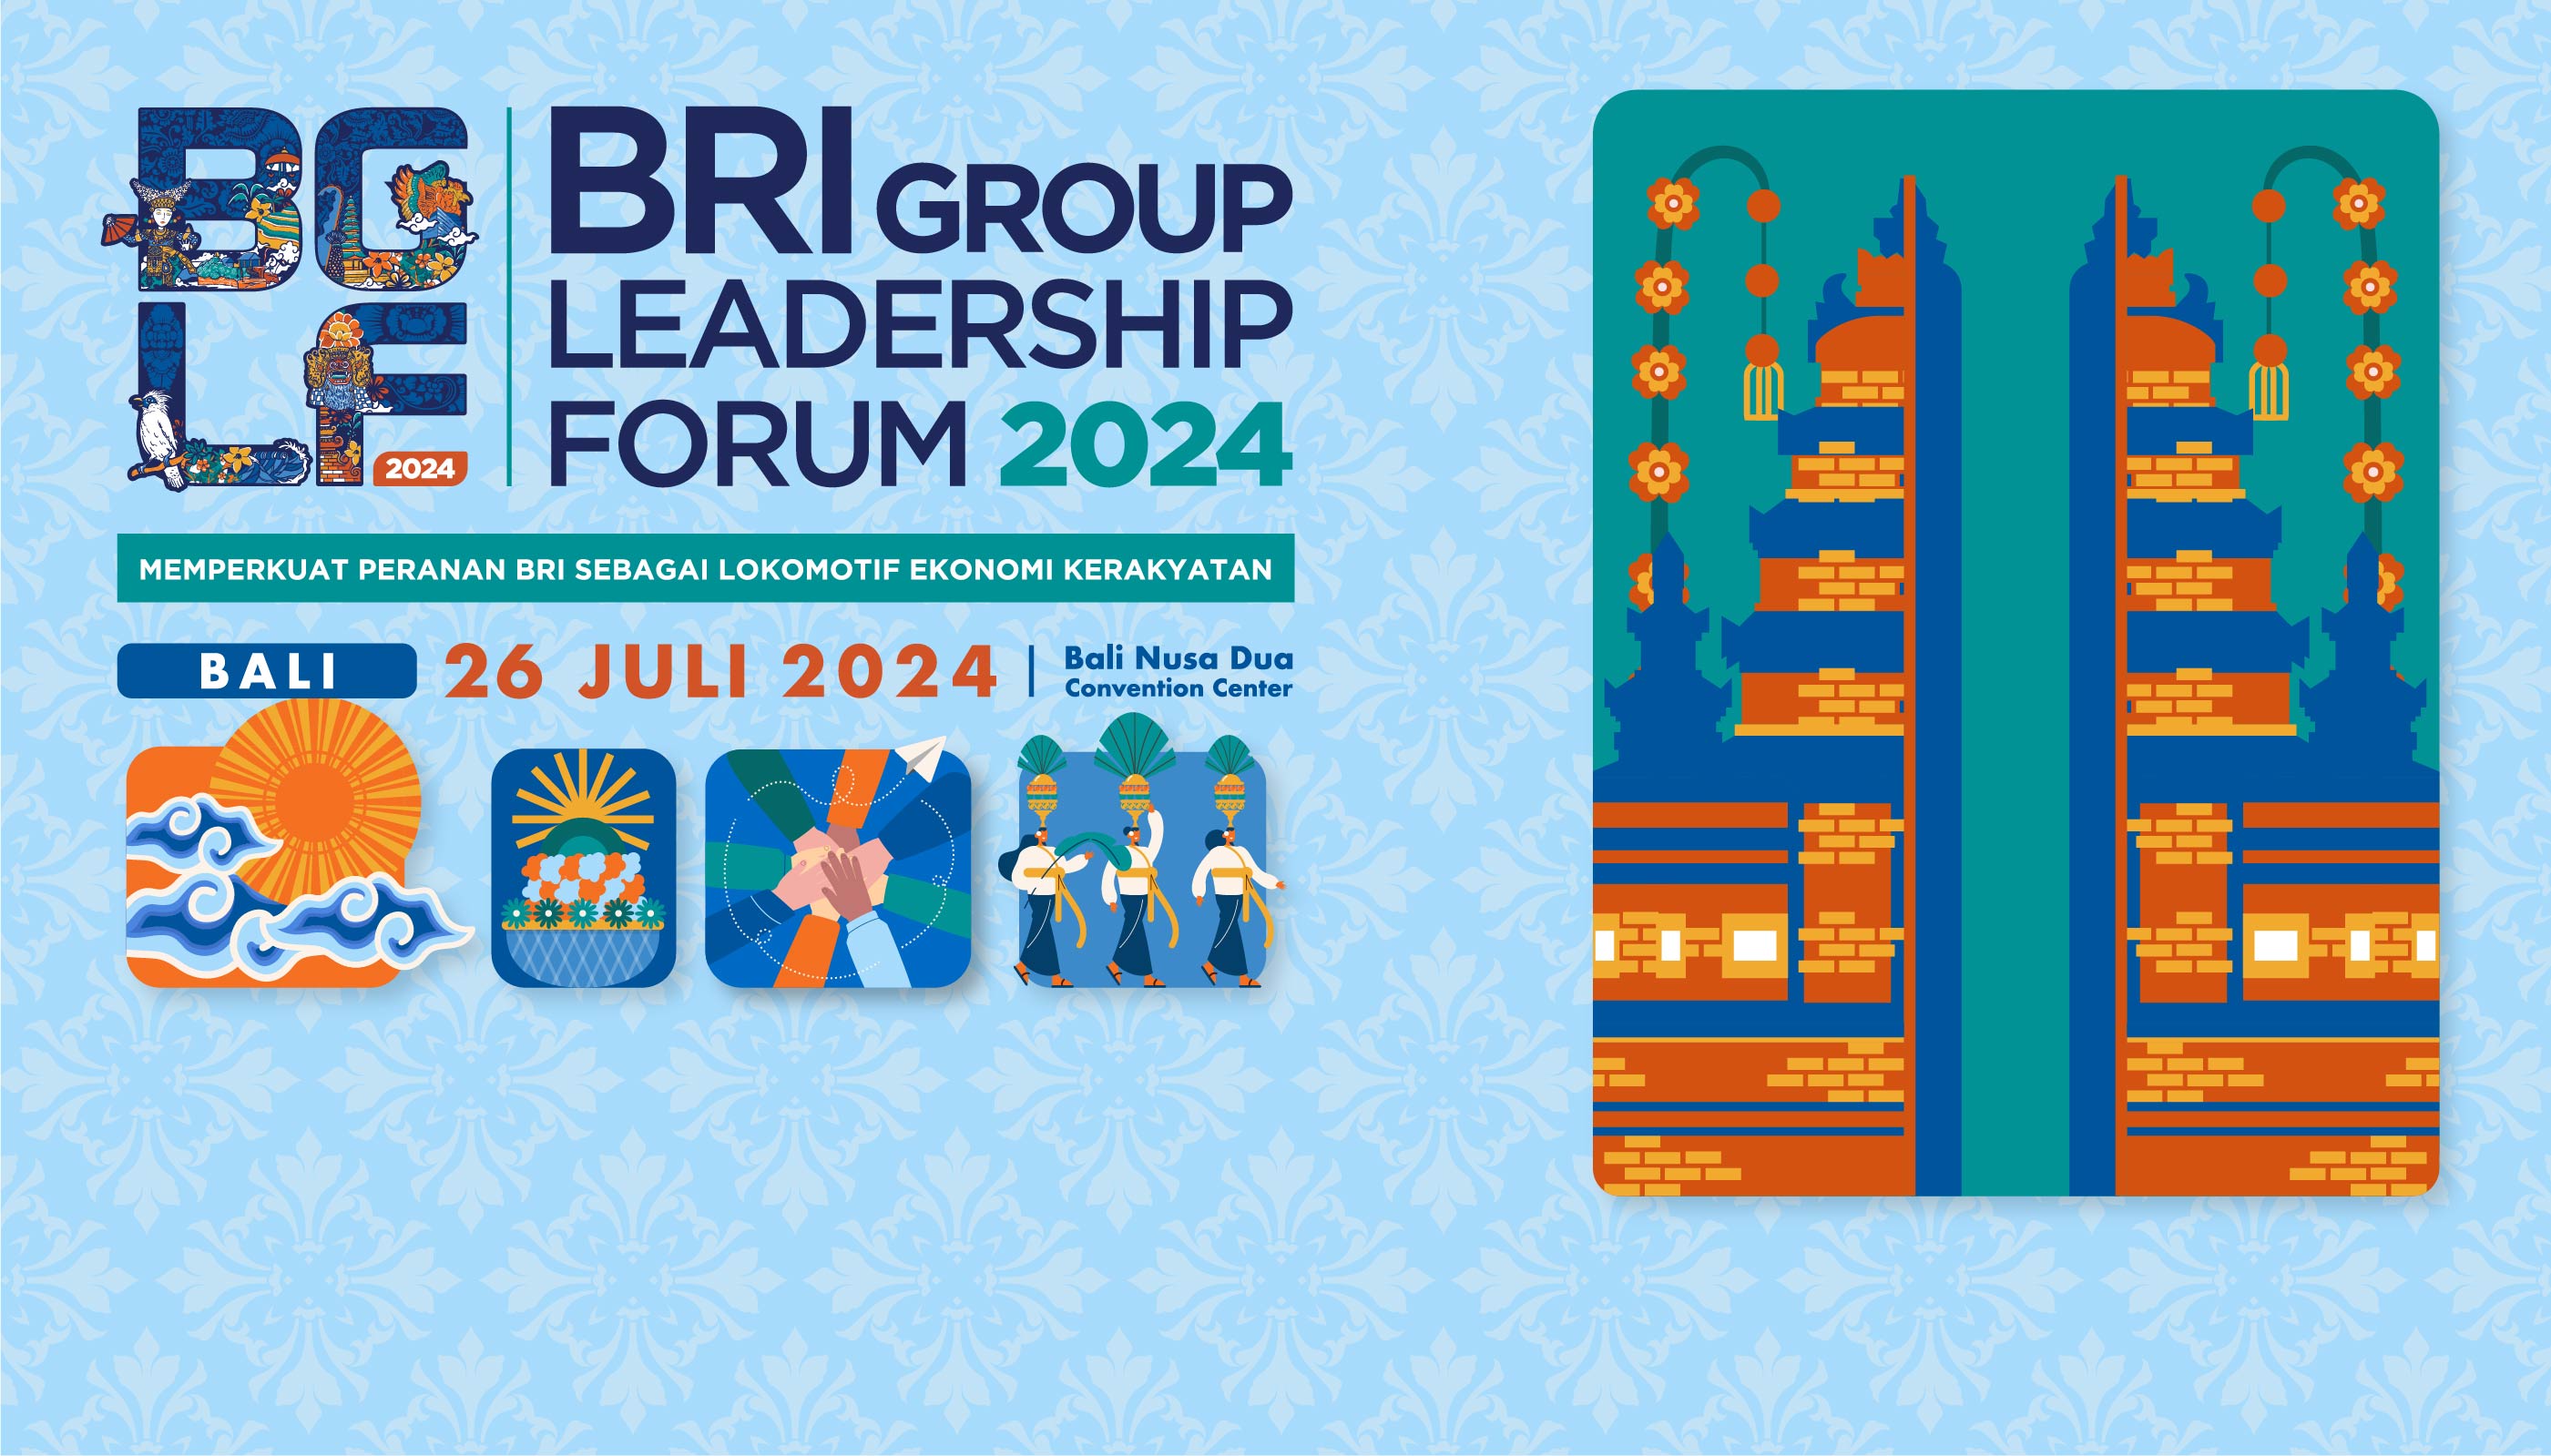 BRI Group Leadership Forum (BGLF) 2024